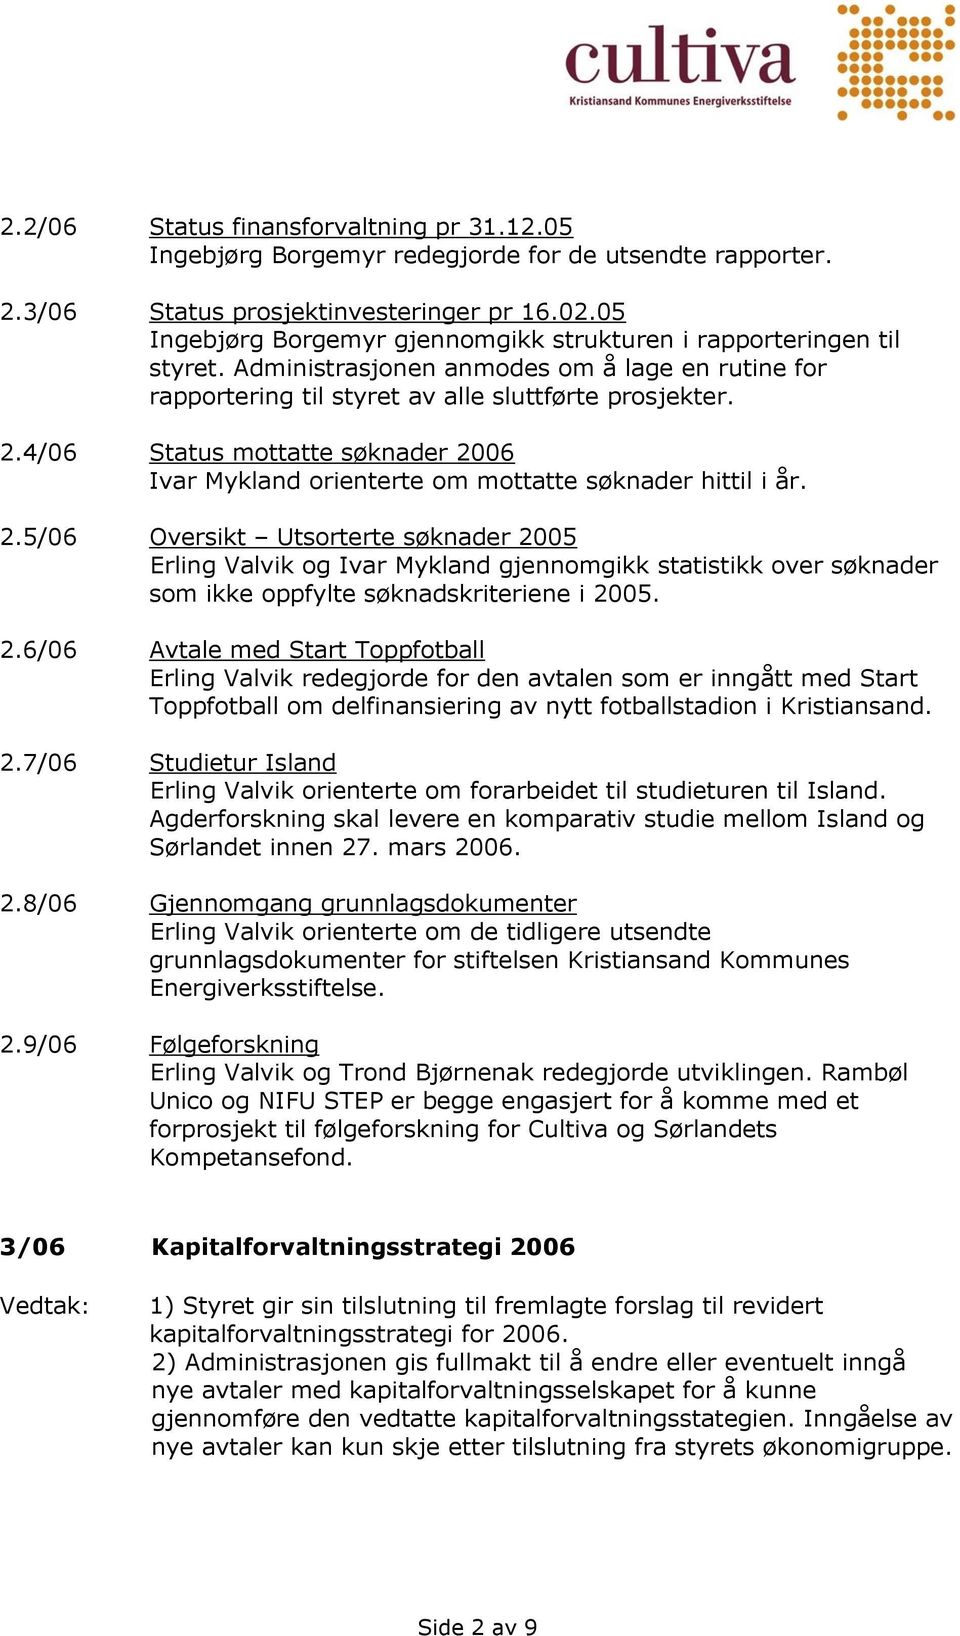 4/06 Status mottatte søknader 2006 Ivar Mykland orienterte om mottatte søknader hittil i år. 2.5/06 Oversikt Utsorterte søknader 2005 Erling Valvik og Ivar Mykland gjennomgikk statistikk over søknader som ikke oppfylte søknadskriteriene i 2005.